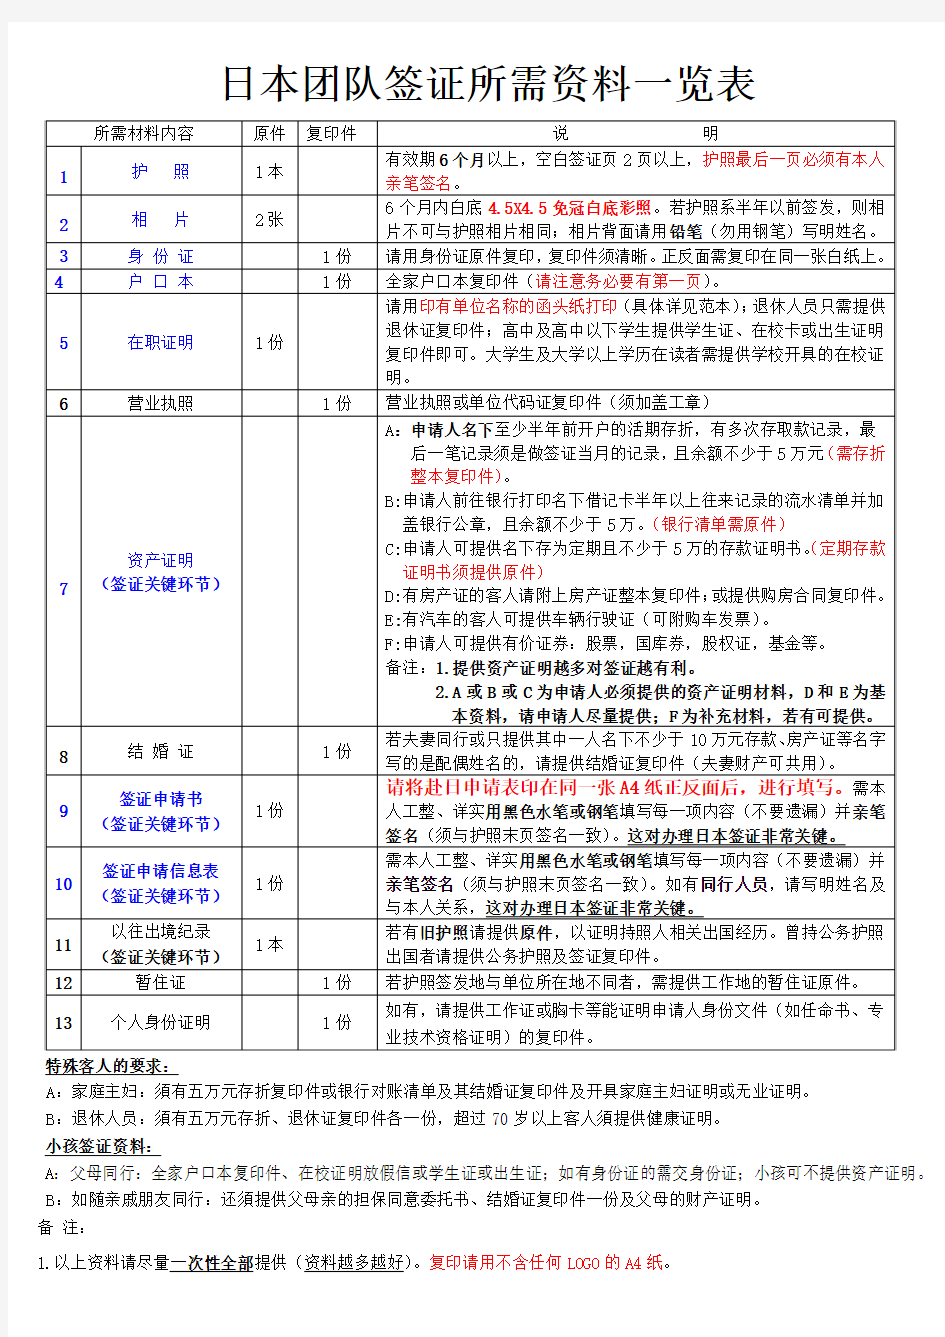 日本团队签证所需资料一览表(新)